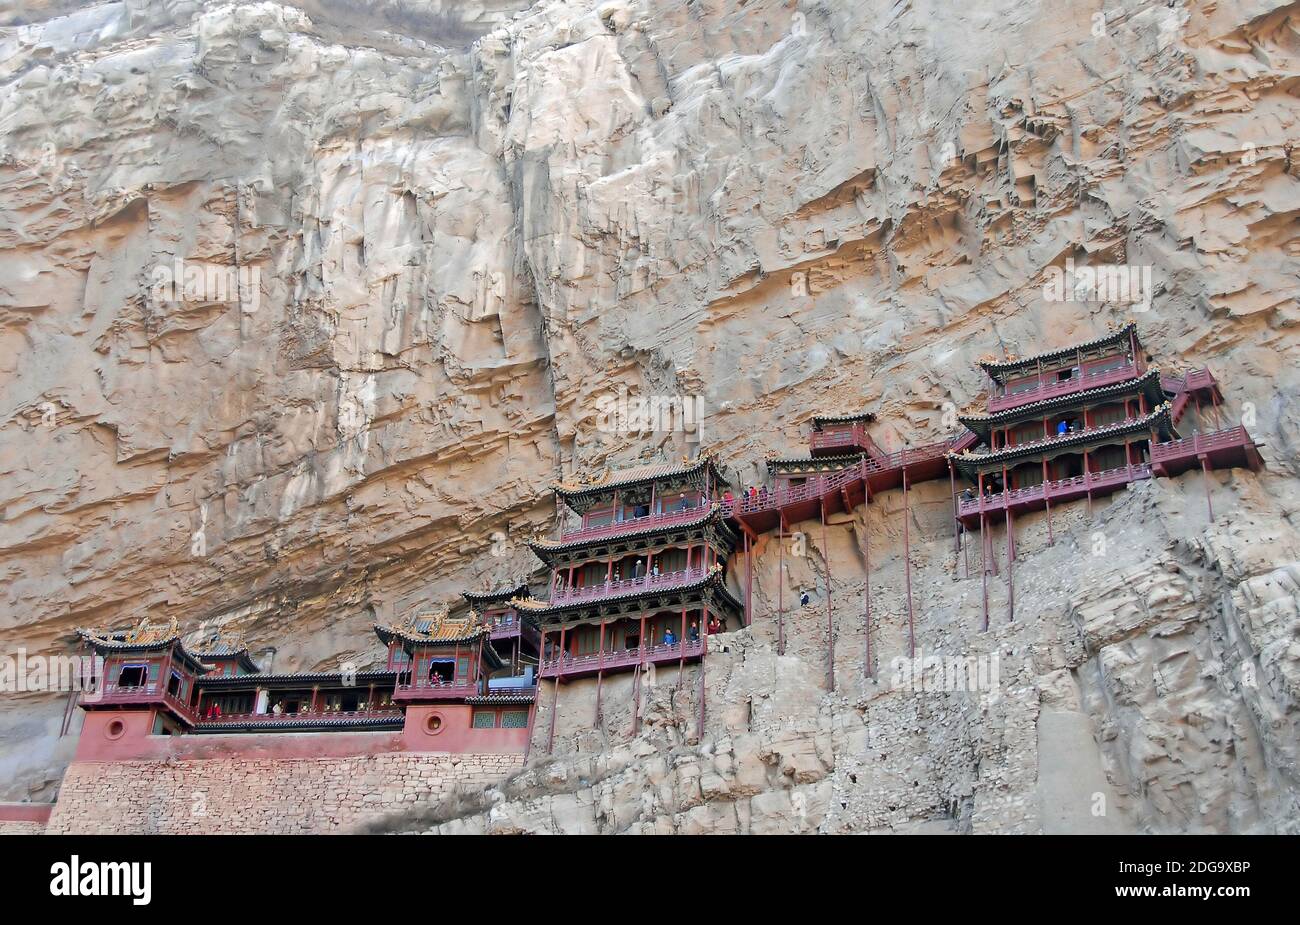 Le Temple suspendu ou Monastère suspendu près de Datong dans la province du Shanxi, en Chine. Le temple suspendu a été construit sur cette falaise il y a environ 1,500 ans. Banque D'Images